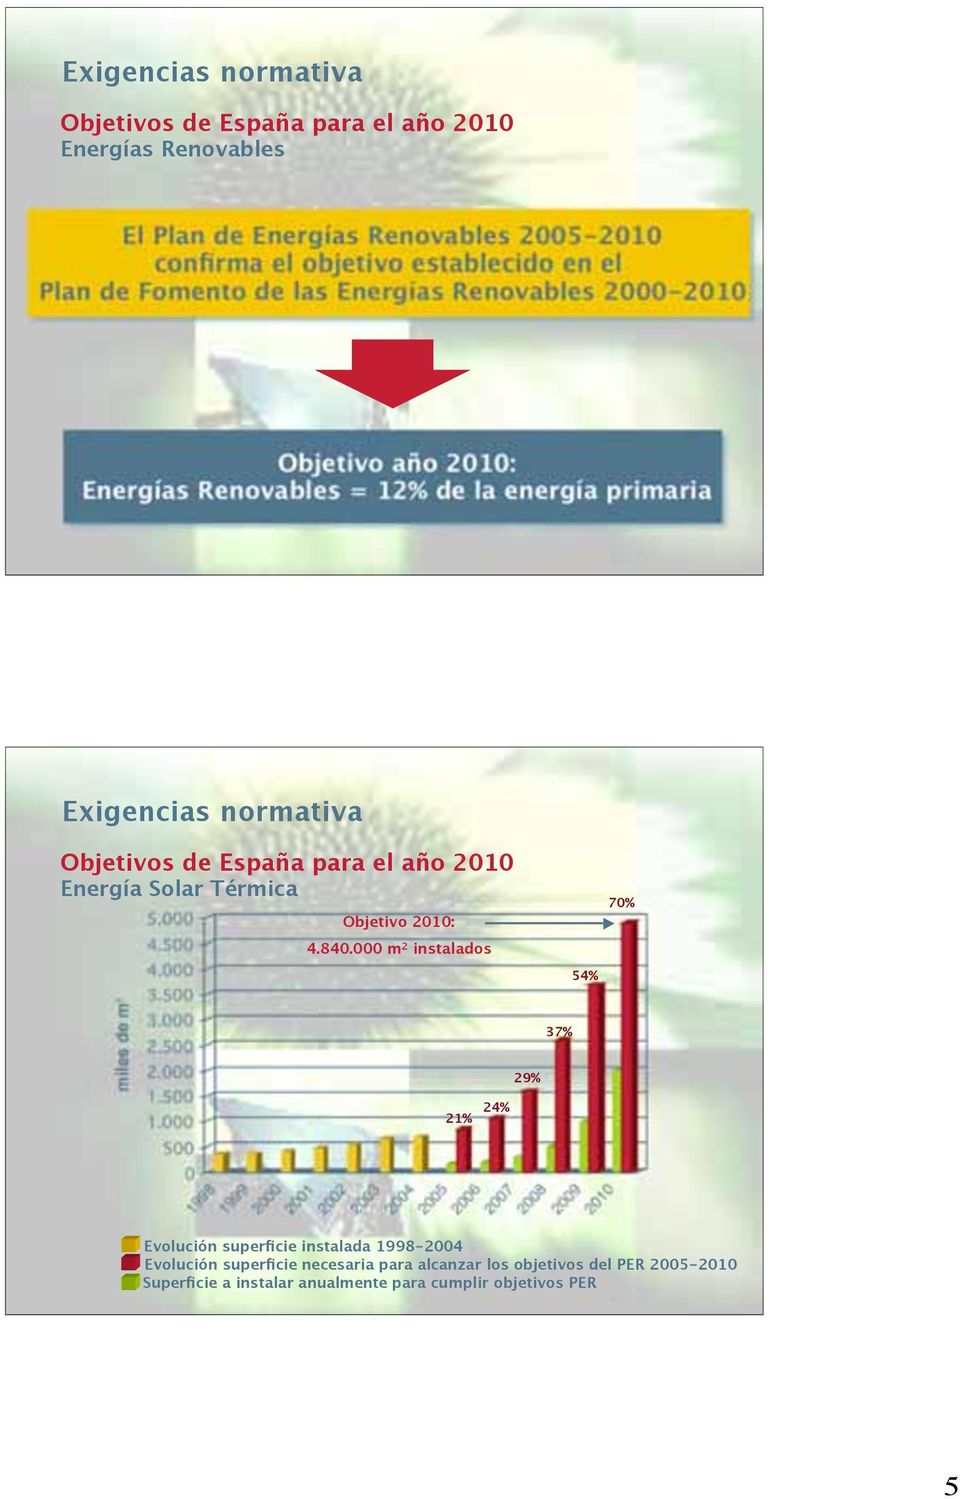 Objetivos de España para el año 2010 Energía Solar Térmica Objetivo 2010: 4.840.